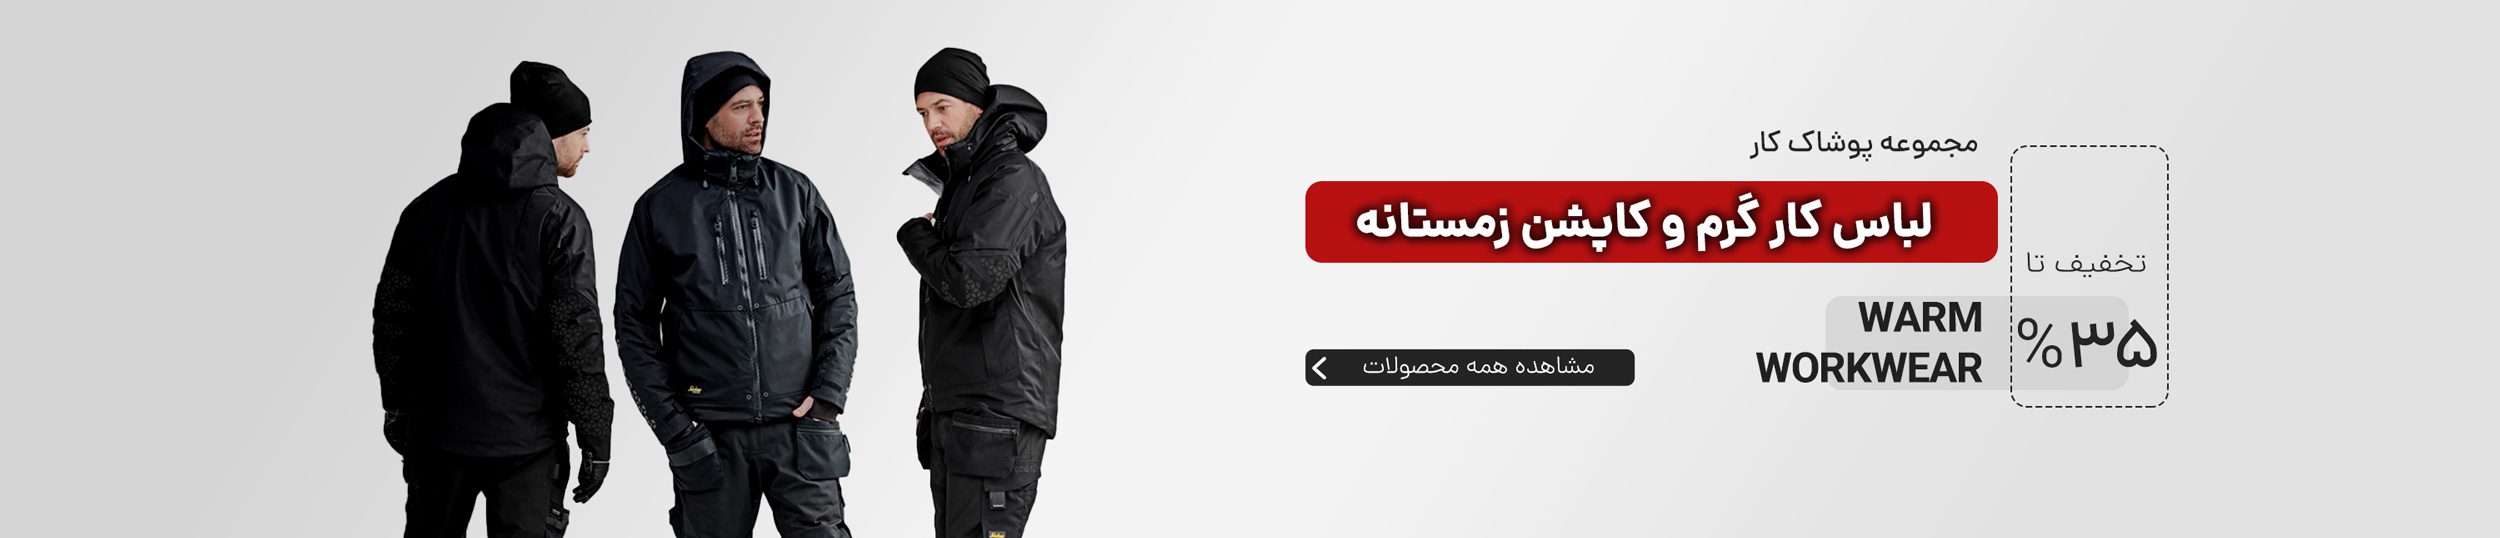 قیمت لباس گرم زیر و کاپشن زمستانه در فیکس ابزار با قیمت مناسب